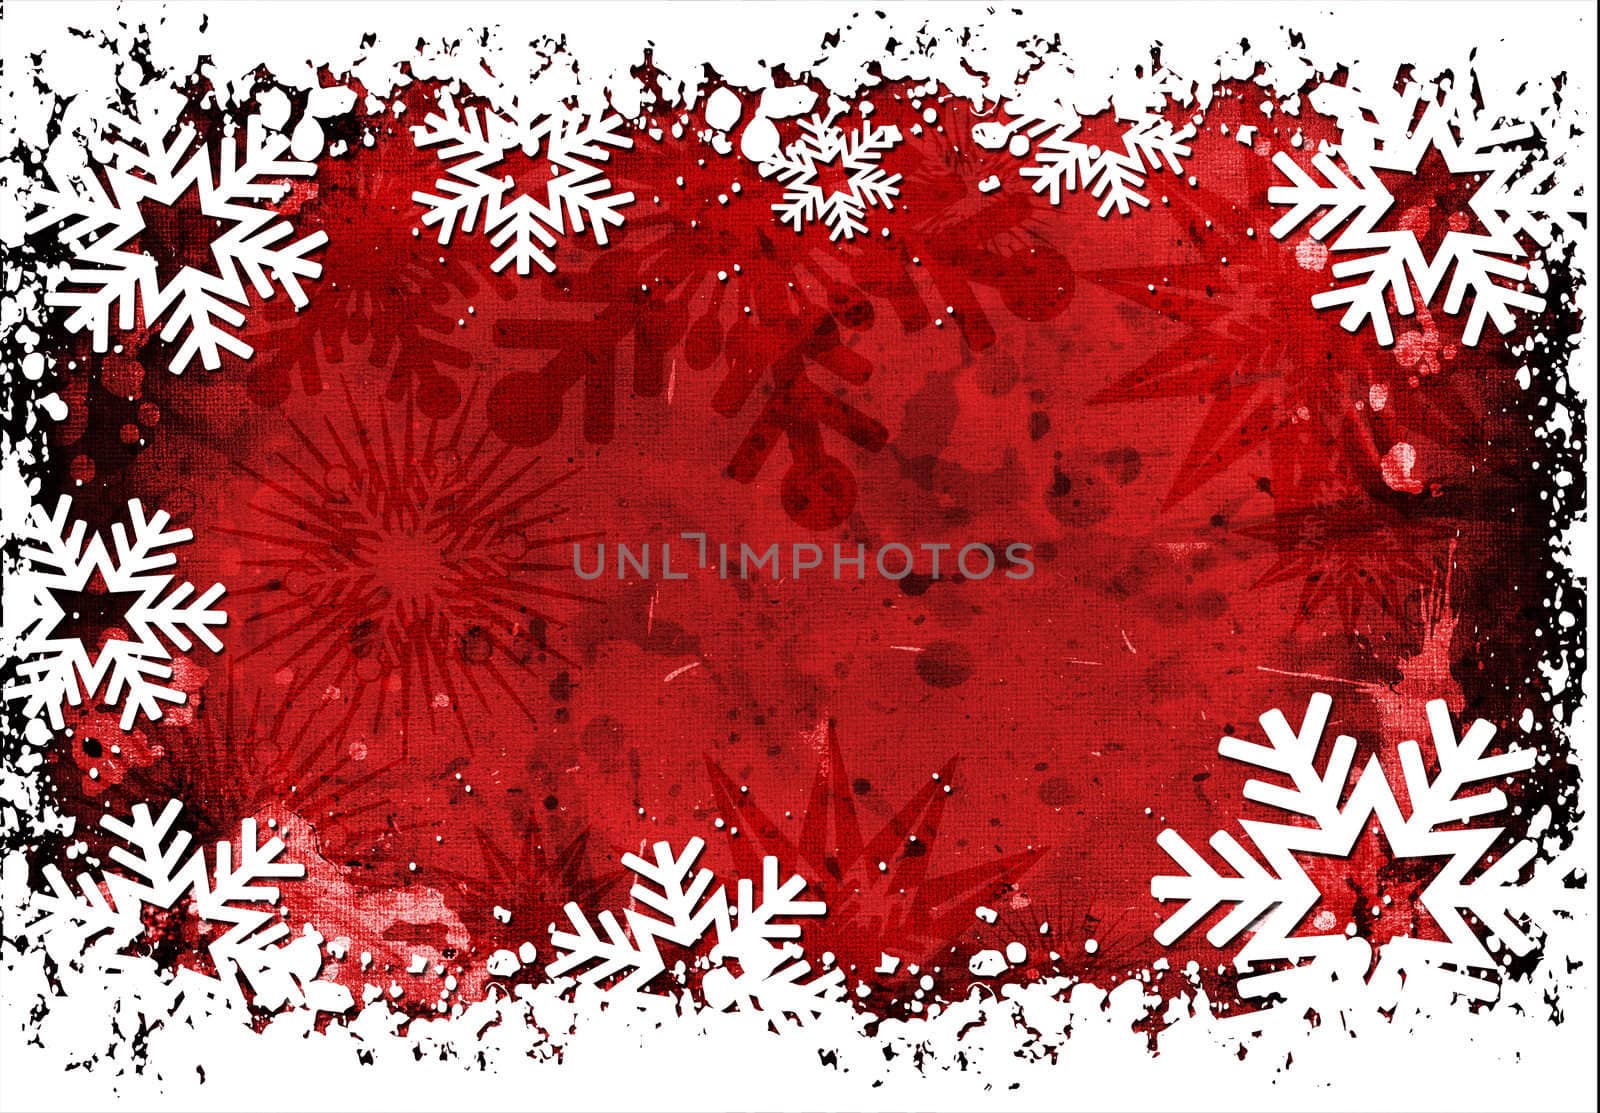 Grunge snowflakes by kjpargeter